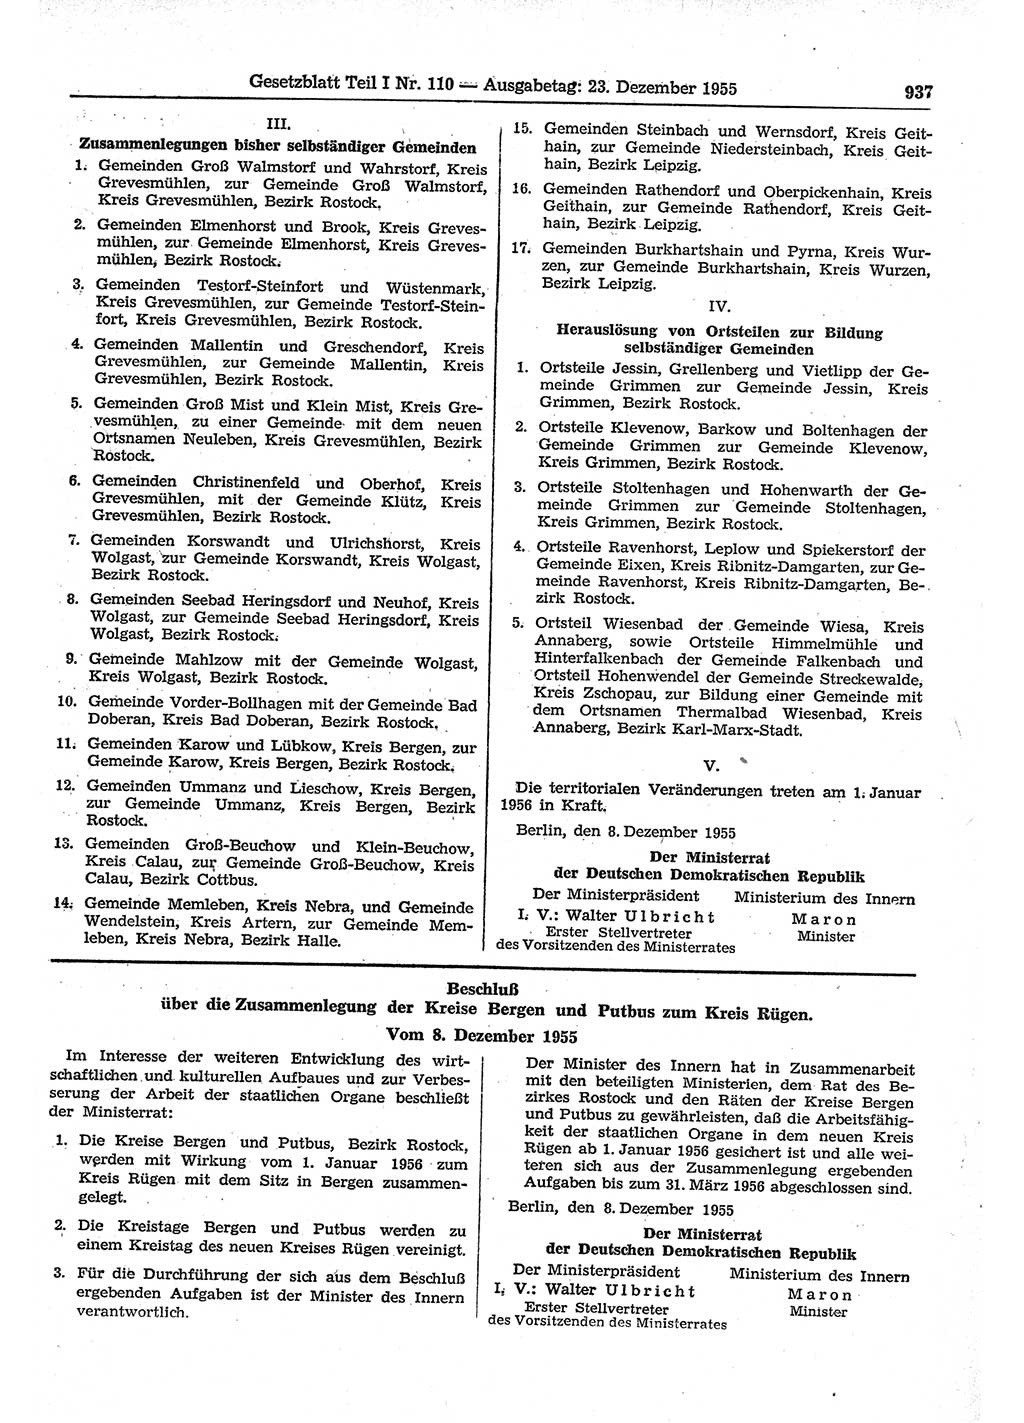 Gesetzblatt (GBl.) der Deutschen Demokratischen Republik (DDR) Teil Ⅰ 1955, Seite 937 (GBl. DDR Ⅰ 1955, S. 937)